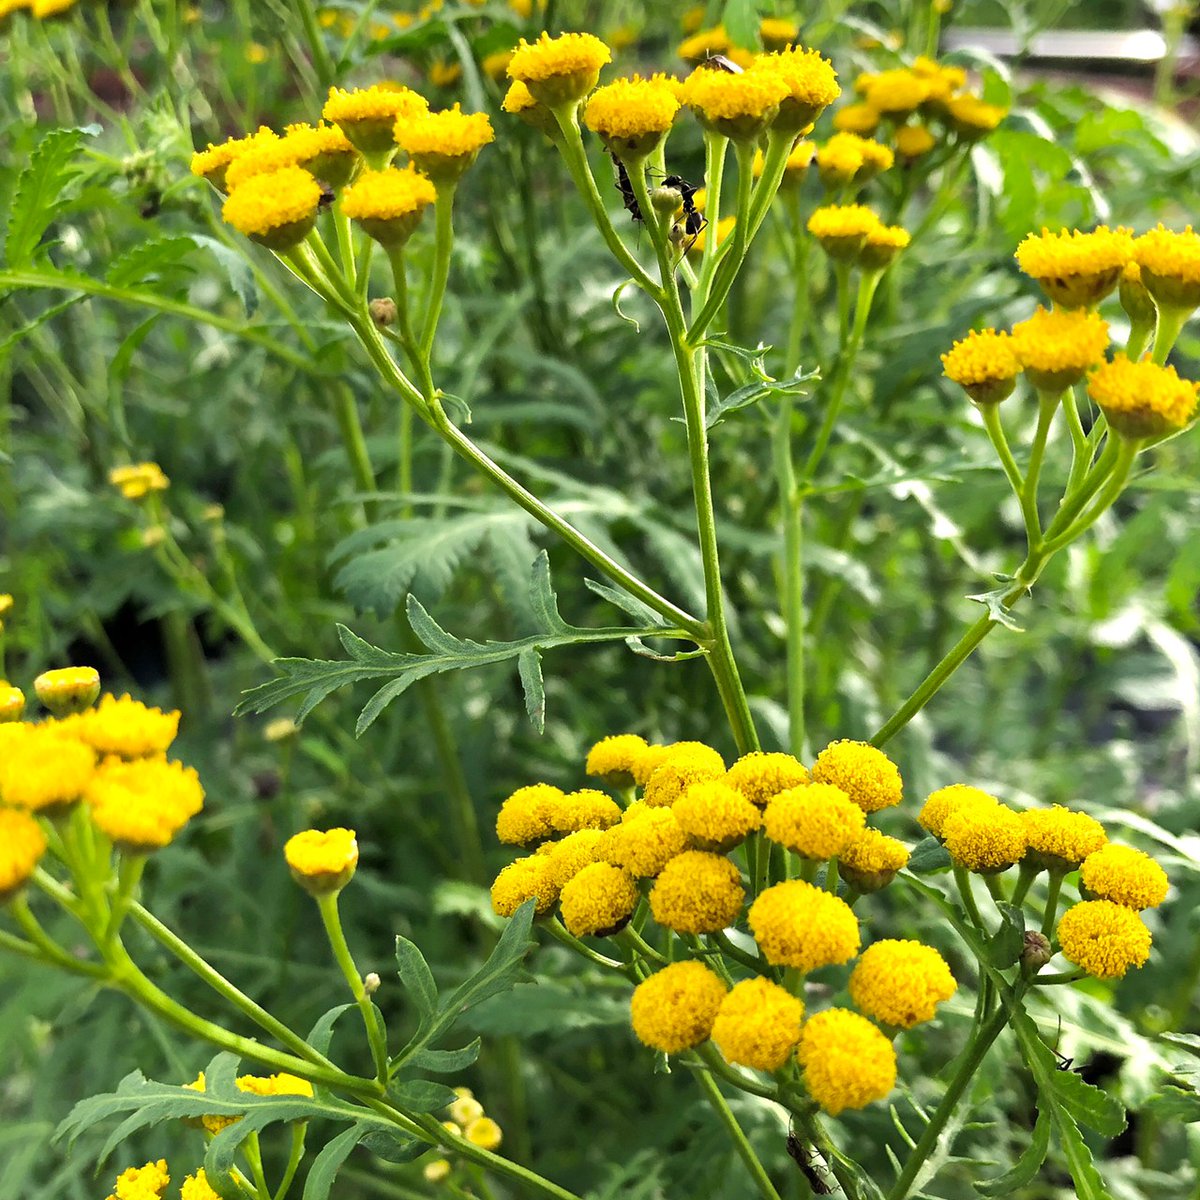 都立汐入公園 タンジー 汐入公園のハーブガーデンの中でも特に目立つのが 黄色いタンジーです 小さくて丸い花 の形が丁度洋服のボタンのようでとても可愛らしい花です 独特な香りには防虫効果があります 荒川区 ハーブガーデン ハーブ 黄色い